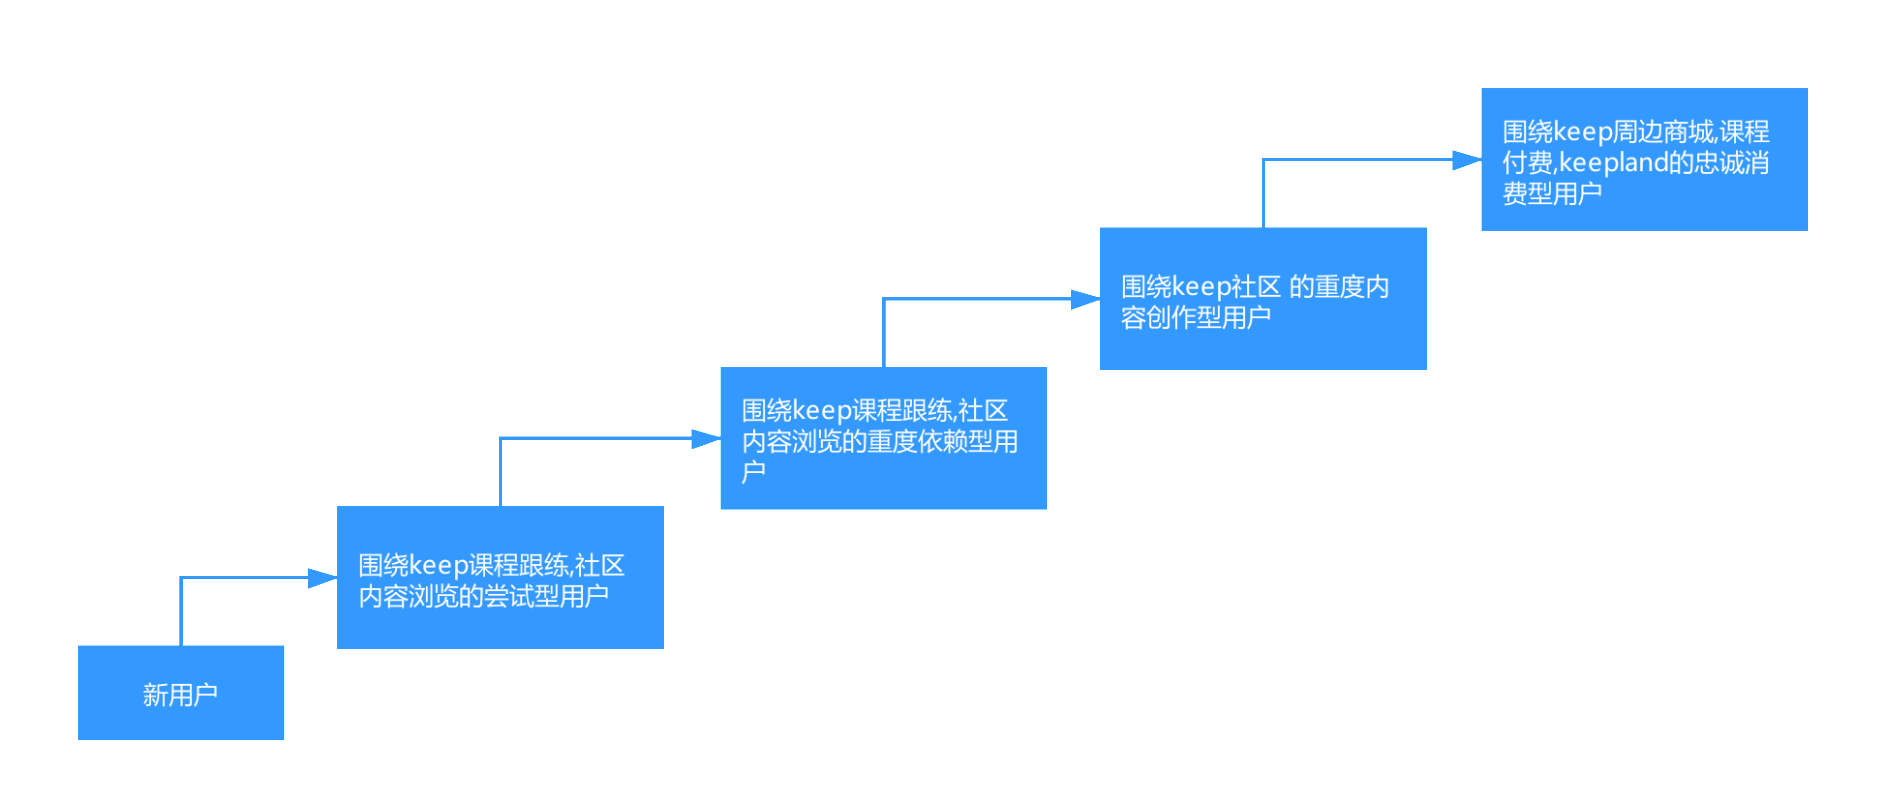 19.09.19 Keep-如何搭建用户运营体系详解【案例】 - 图5